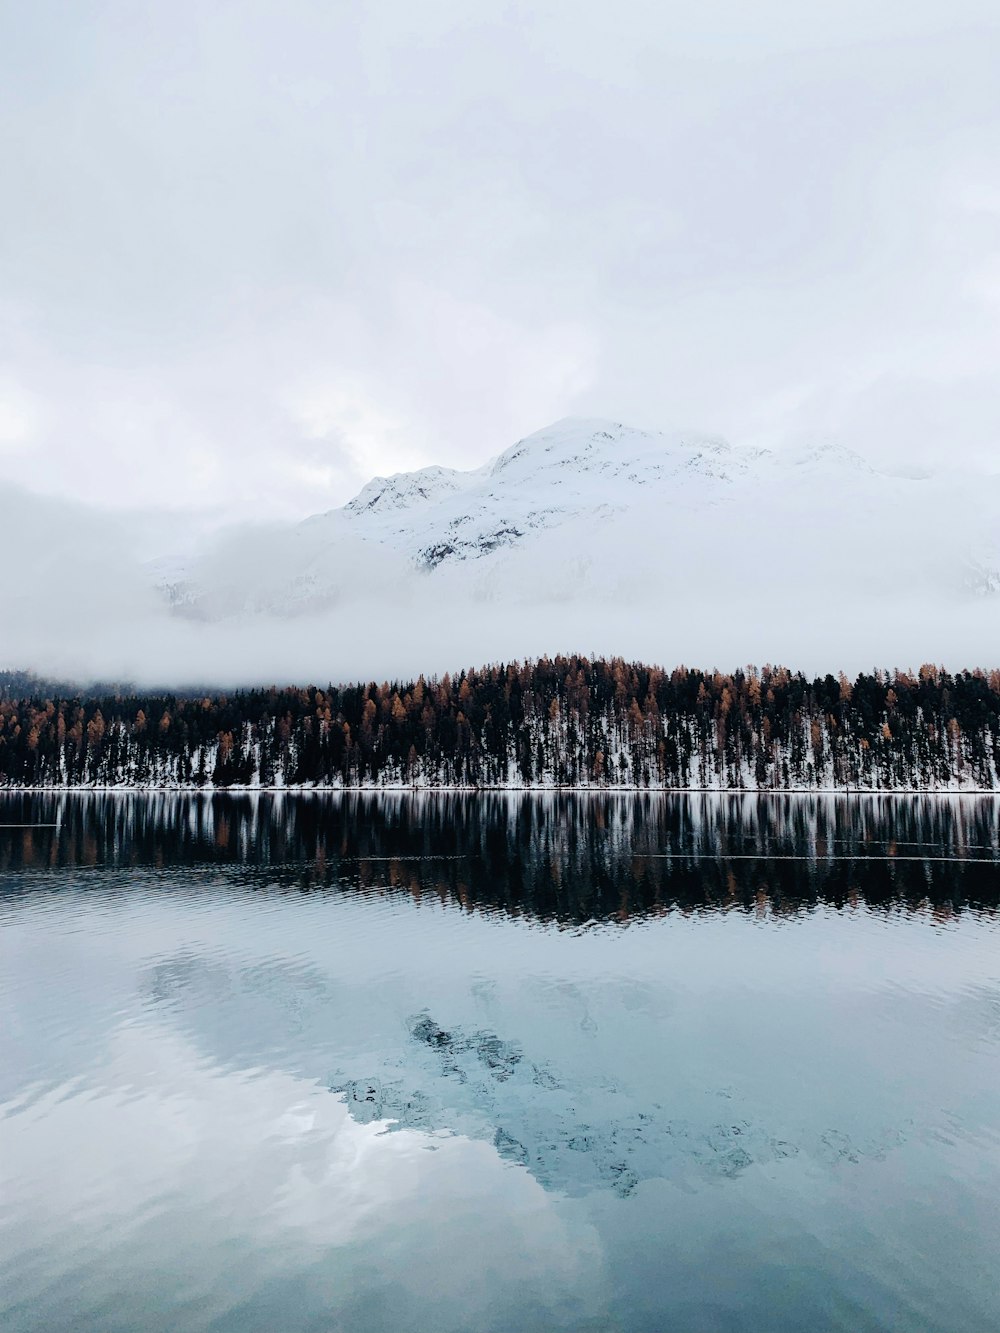 Un lago rodeado de montañas cubiertas de nieve y árboles